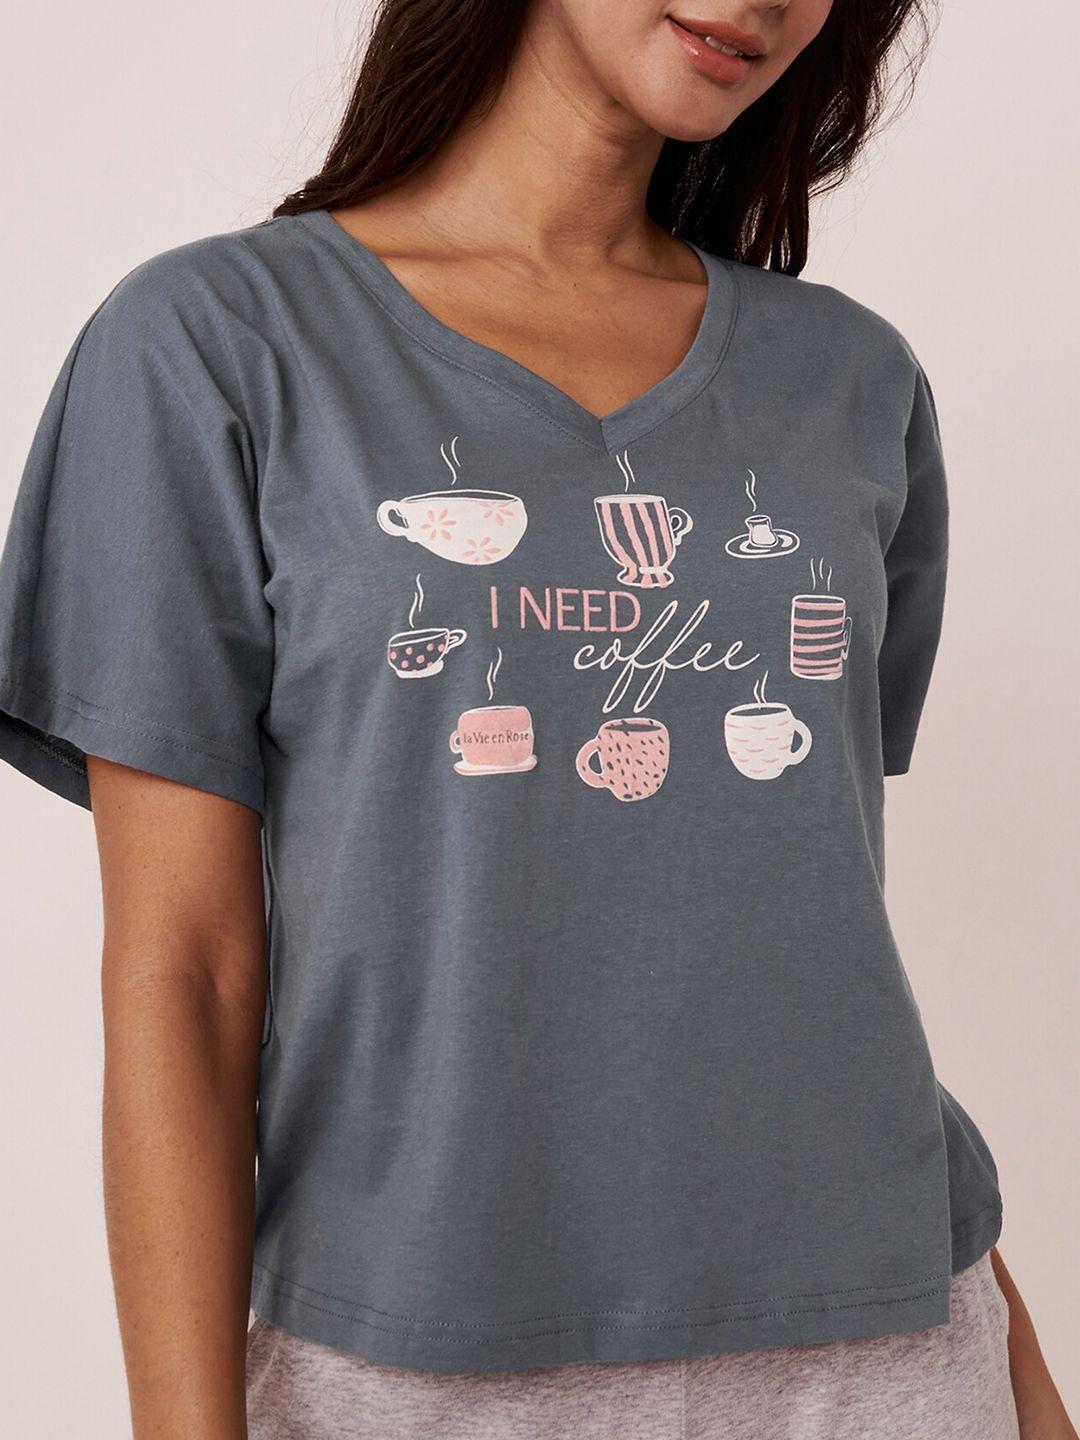 la vie en rose conversational printed cotton t-shirt